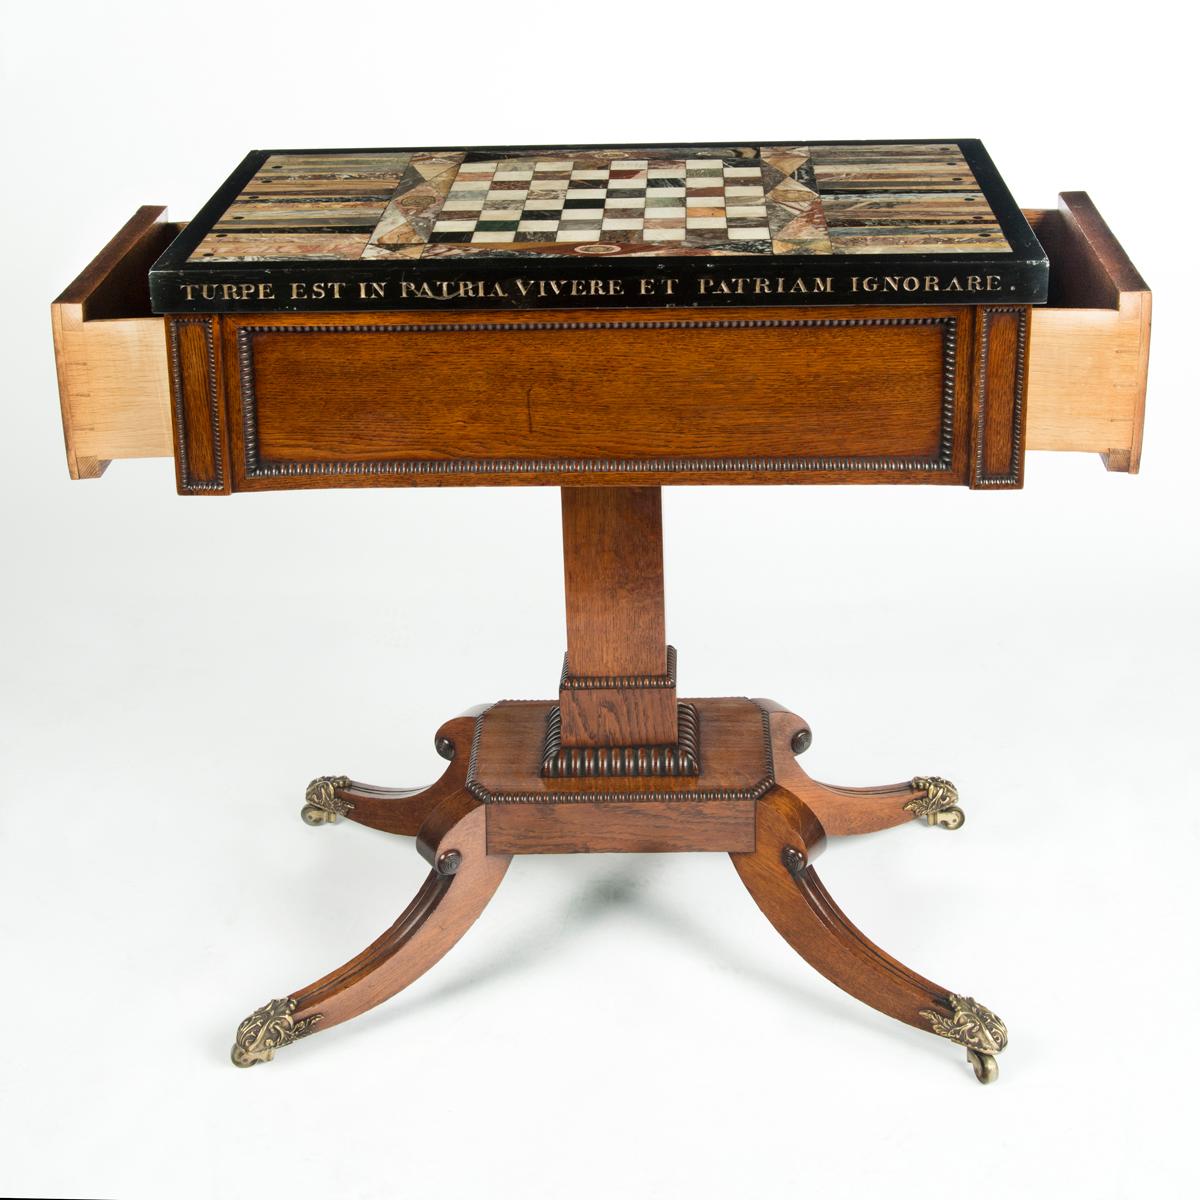 Ein ungewöhnliches Exemplar eines Backgammon-Tisches aus Marmor von George IV, das Gillows zugeschrieben wird. Dieser rechteckige Tisch wird eindeutig Gillows zugeschrieben.  Auf der rechteckigen Platte ist ein zentrales Schachbrett eingelegt, das